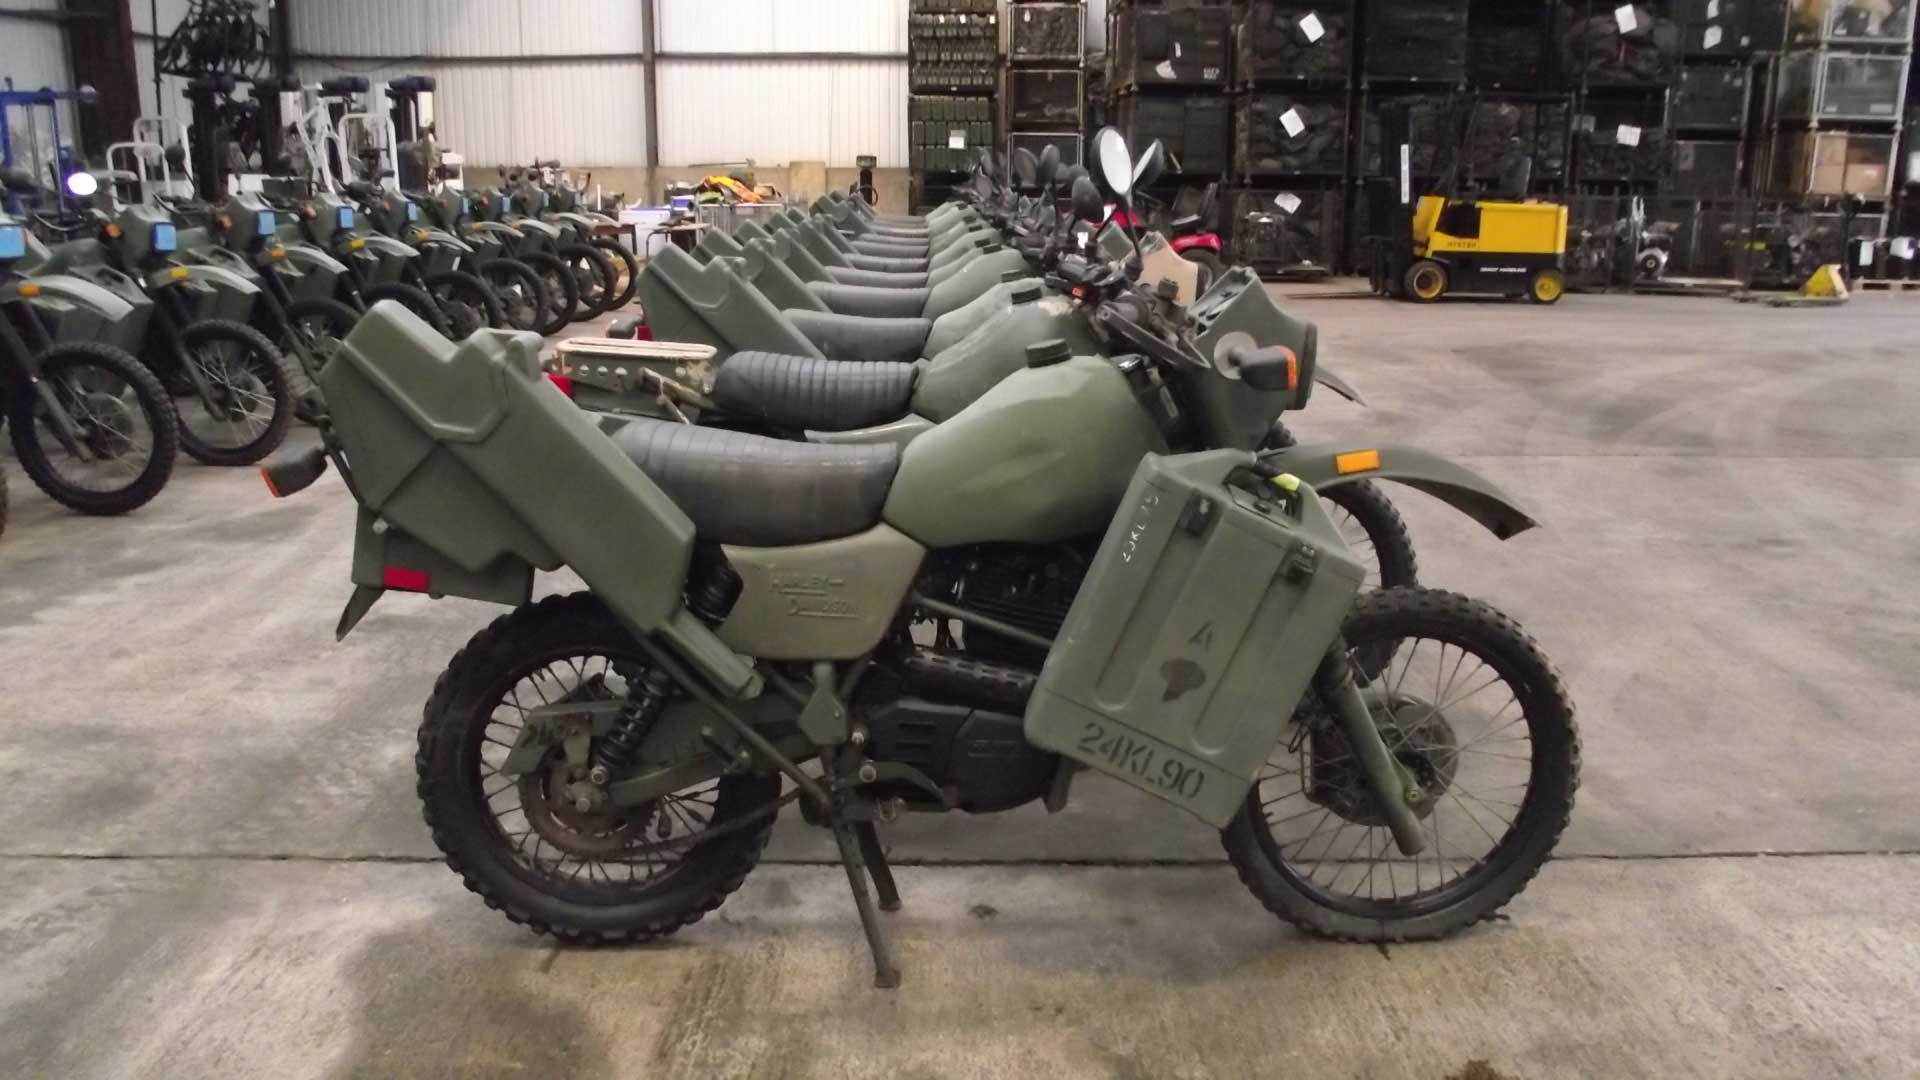 Harley Davidson Army Dirt Bike Yang Terbaru